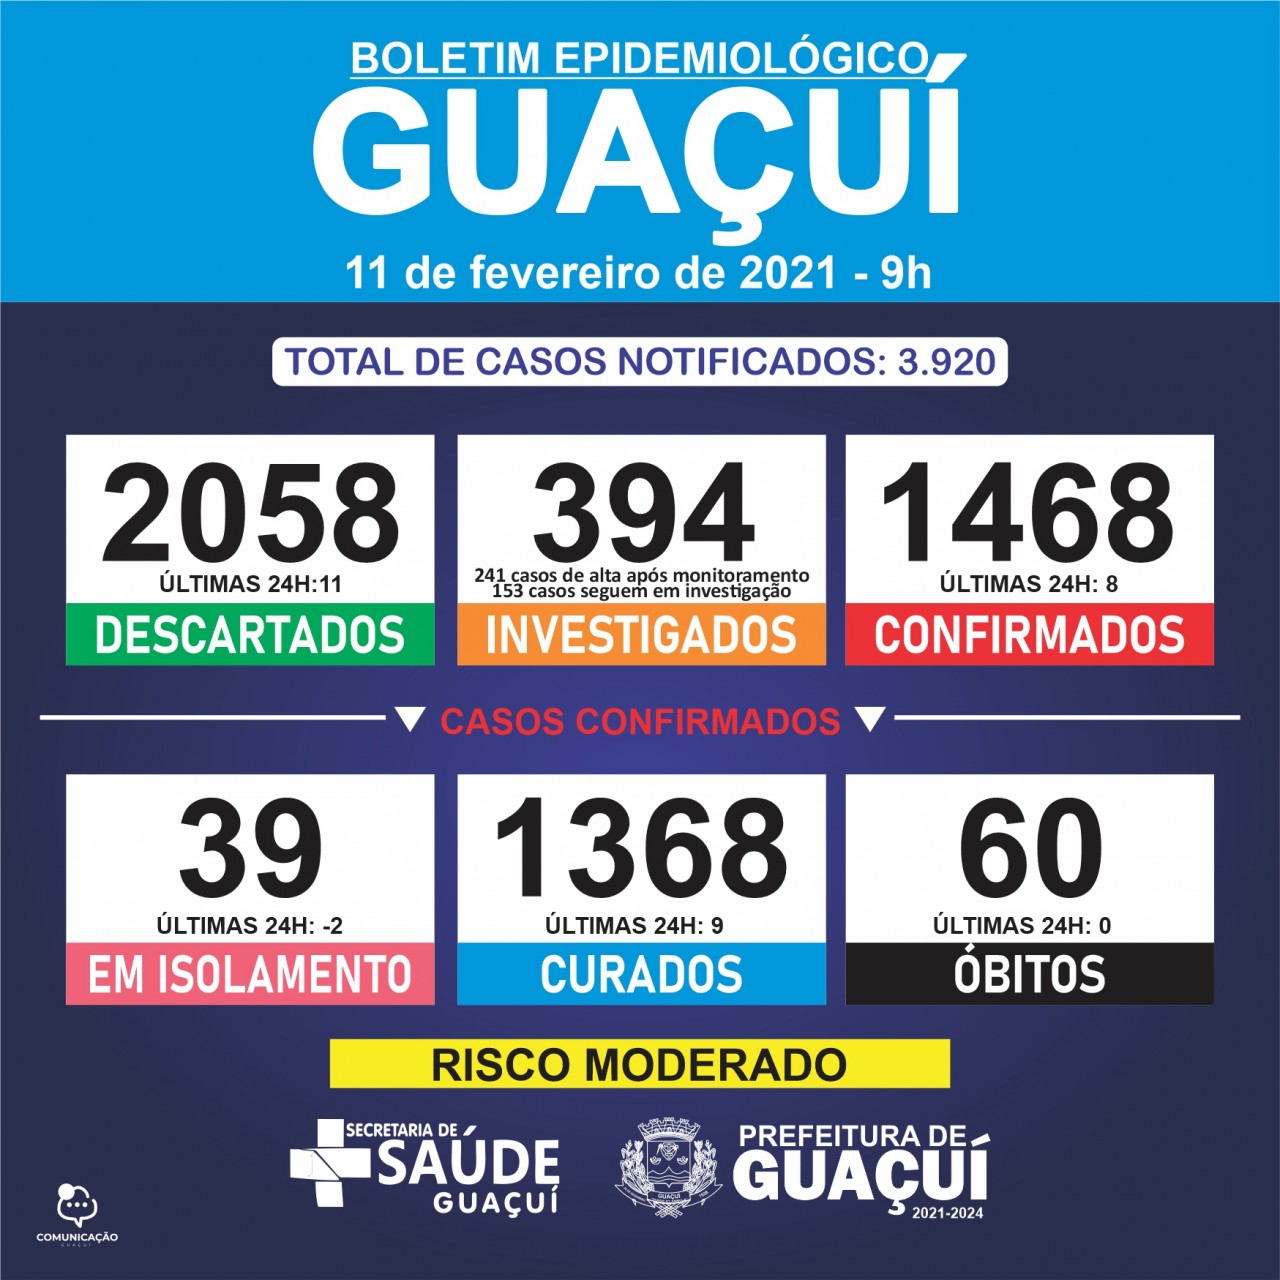 Boletim Epidemiológico 11/02/2021 - Guaçuí registra 9 curados e 8 confirmados de Covid-19 nas últimas 24 horas